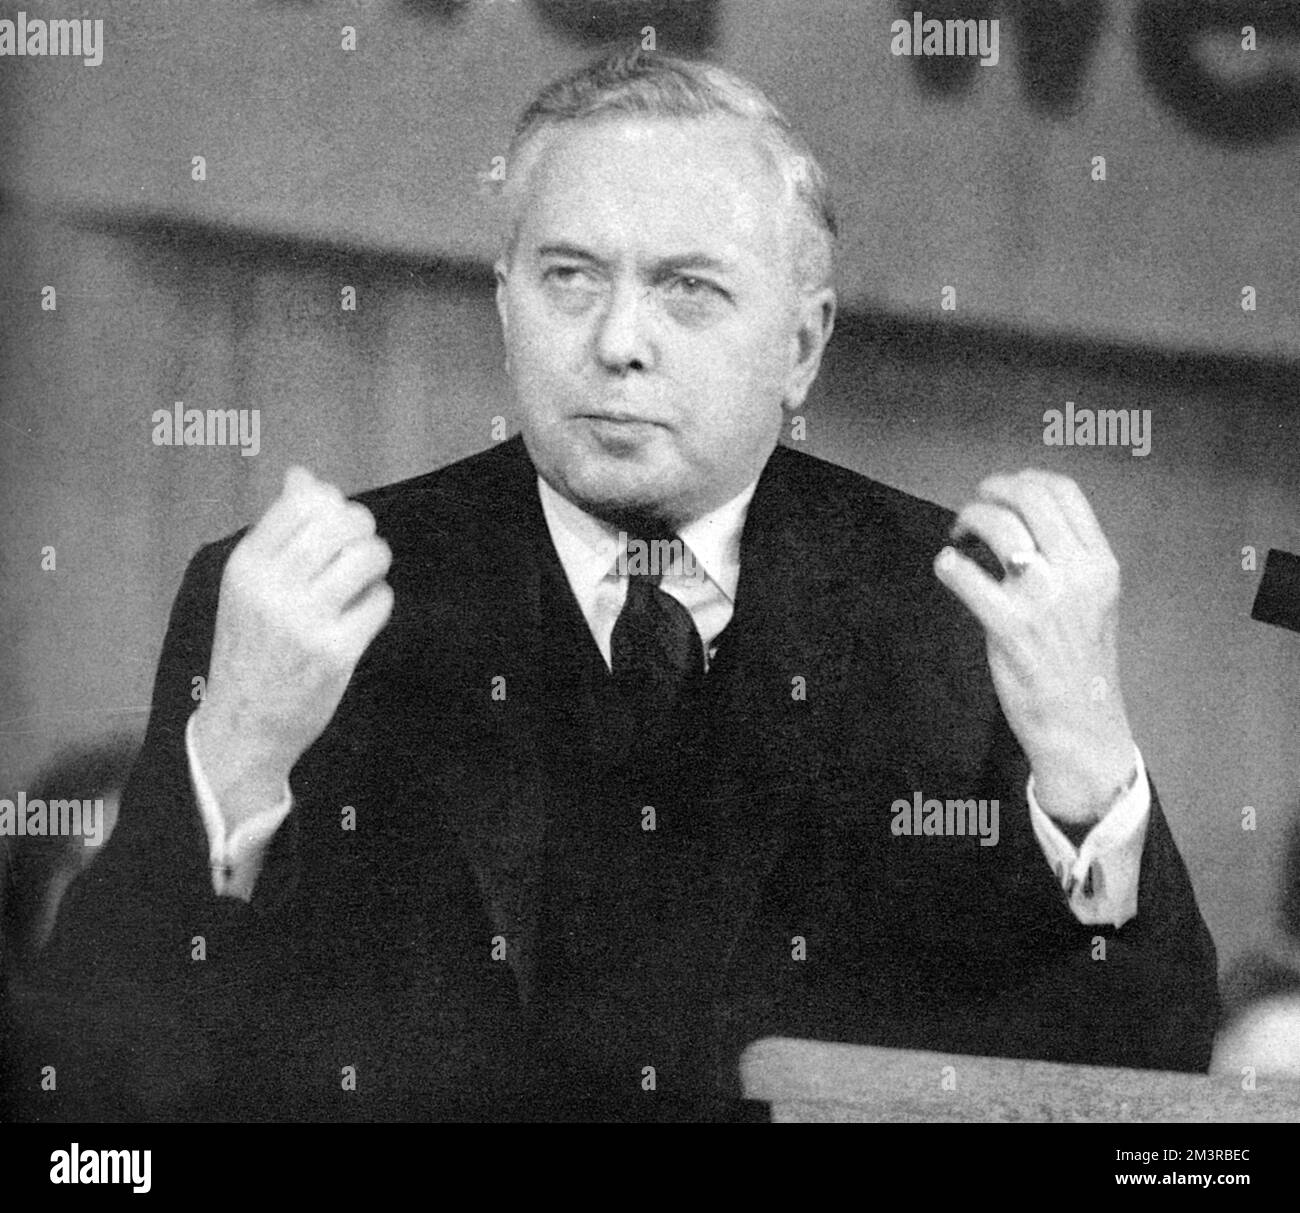 Harold Wilson fait un discours lors des élections générales Date: 1964 Banque D'Images